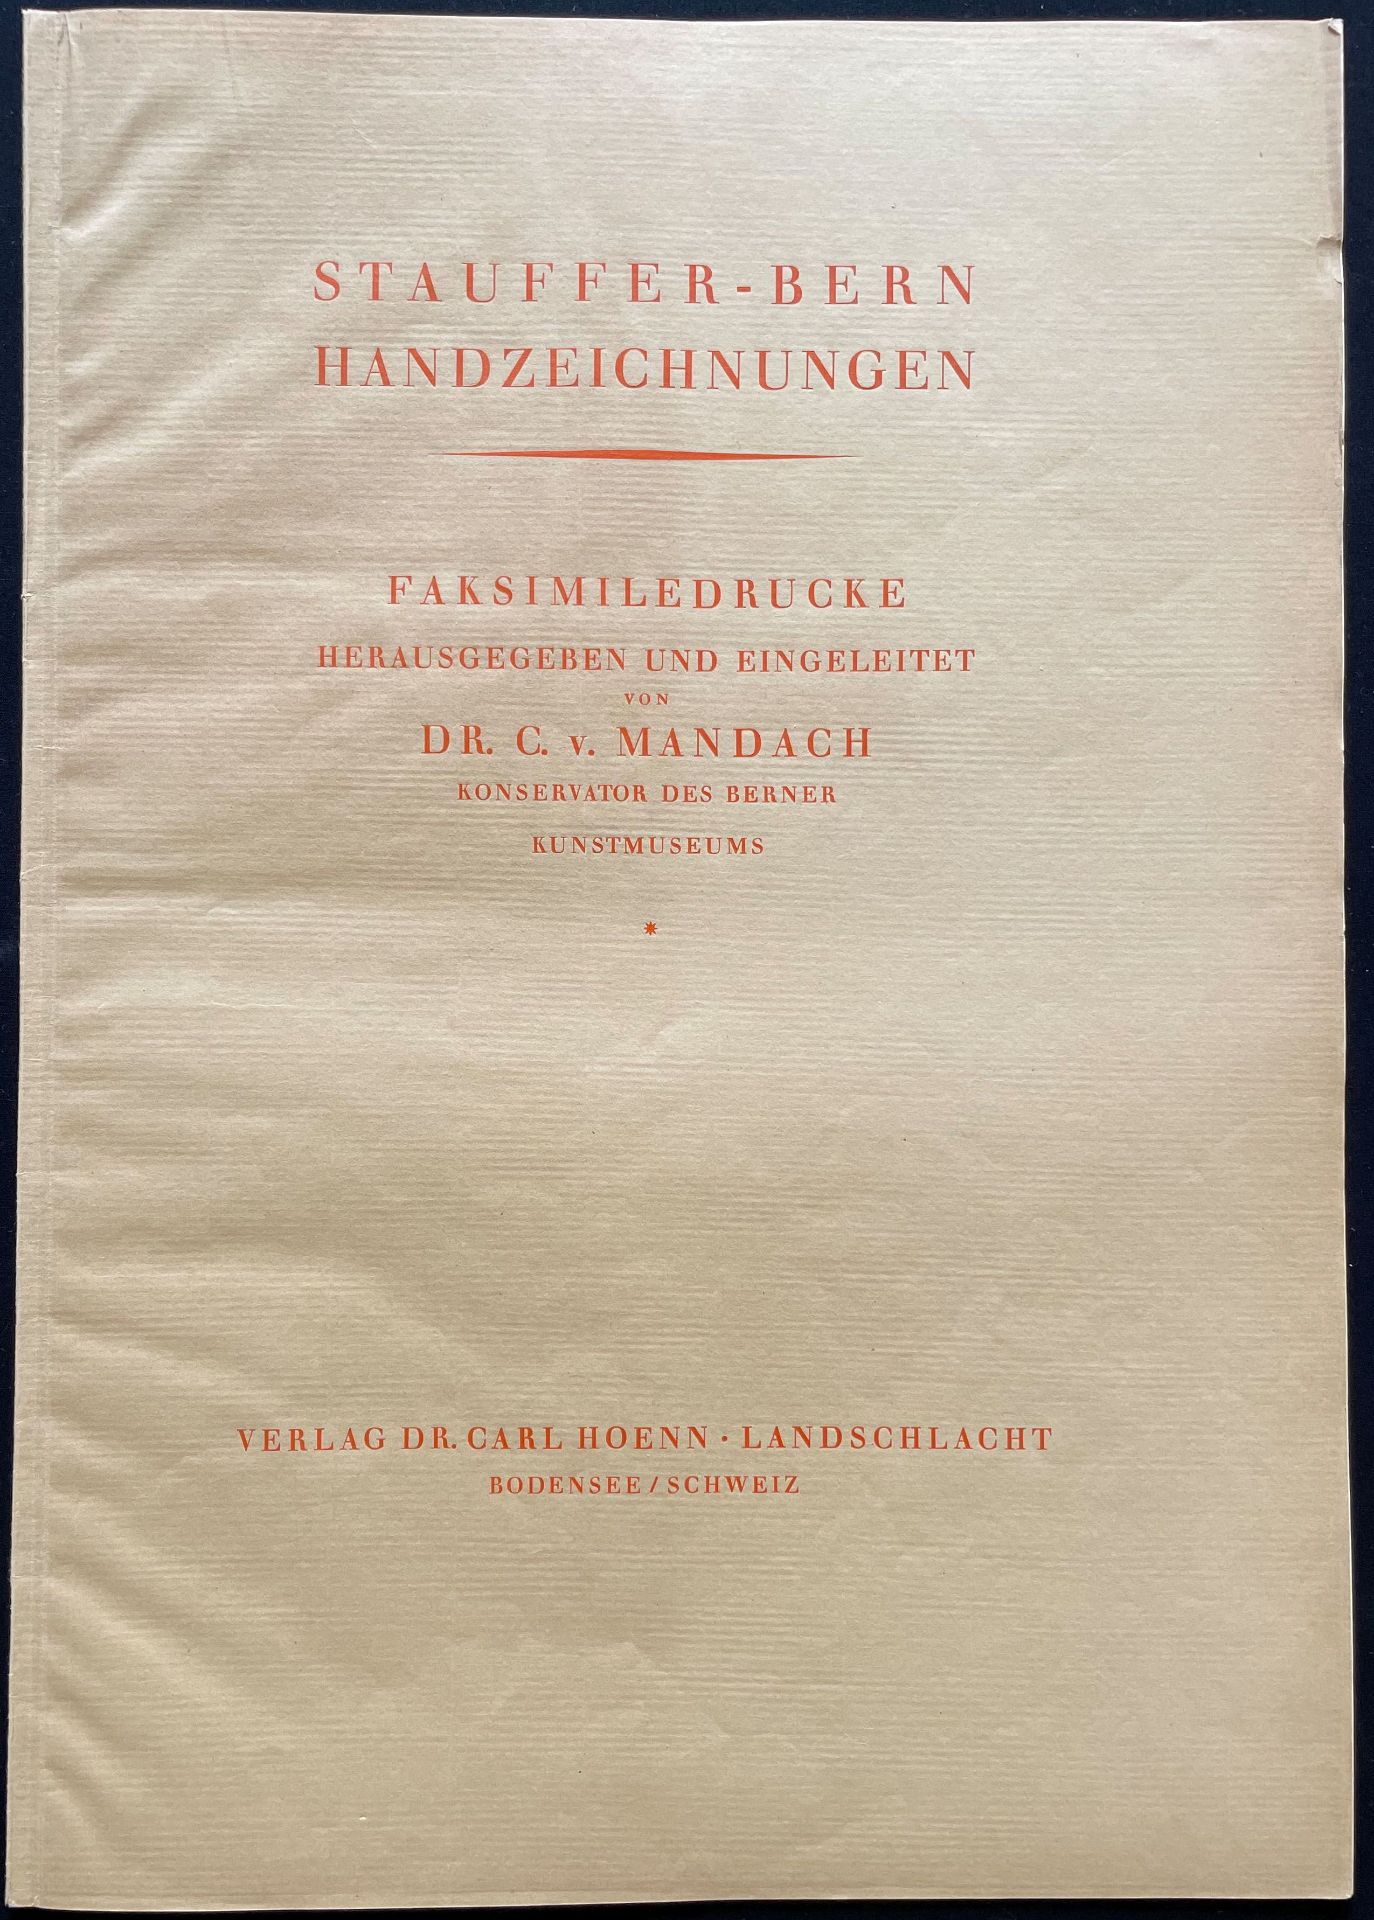 Karl Stauffer-Bern (1857-1891), Mappe mit 38 Faksimiledrucken: männliche und weibliche Akte sowie - Image 6 of 9